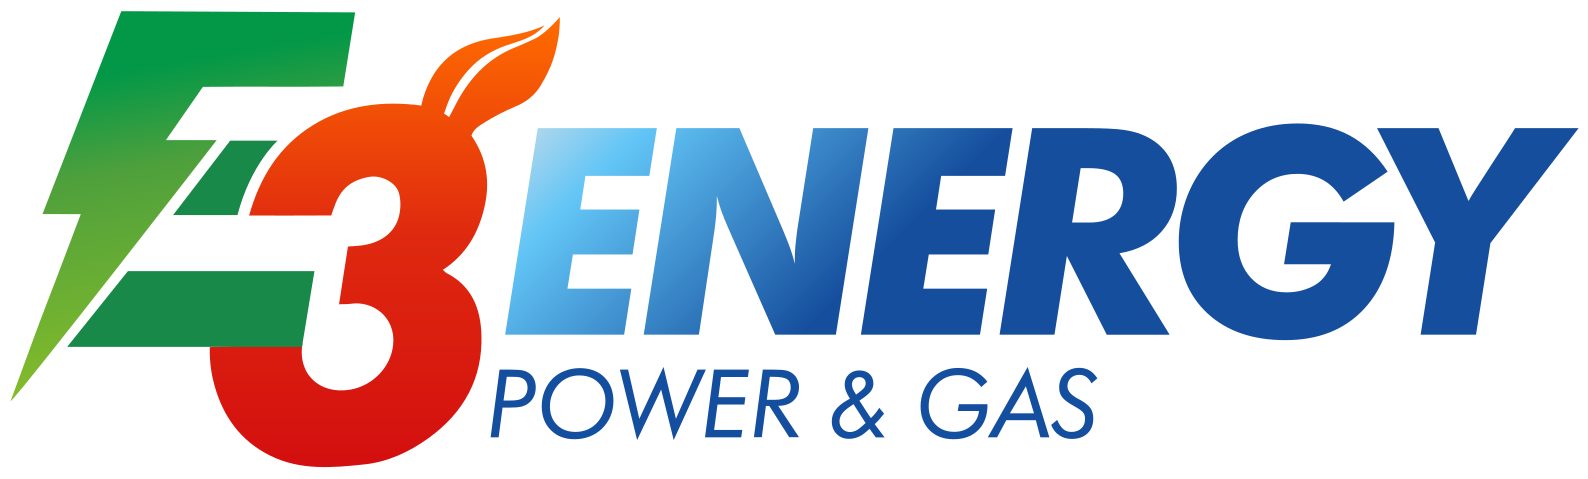 E3ENERGY POWER & GAS